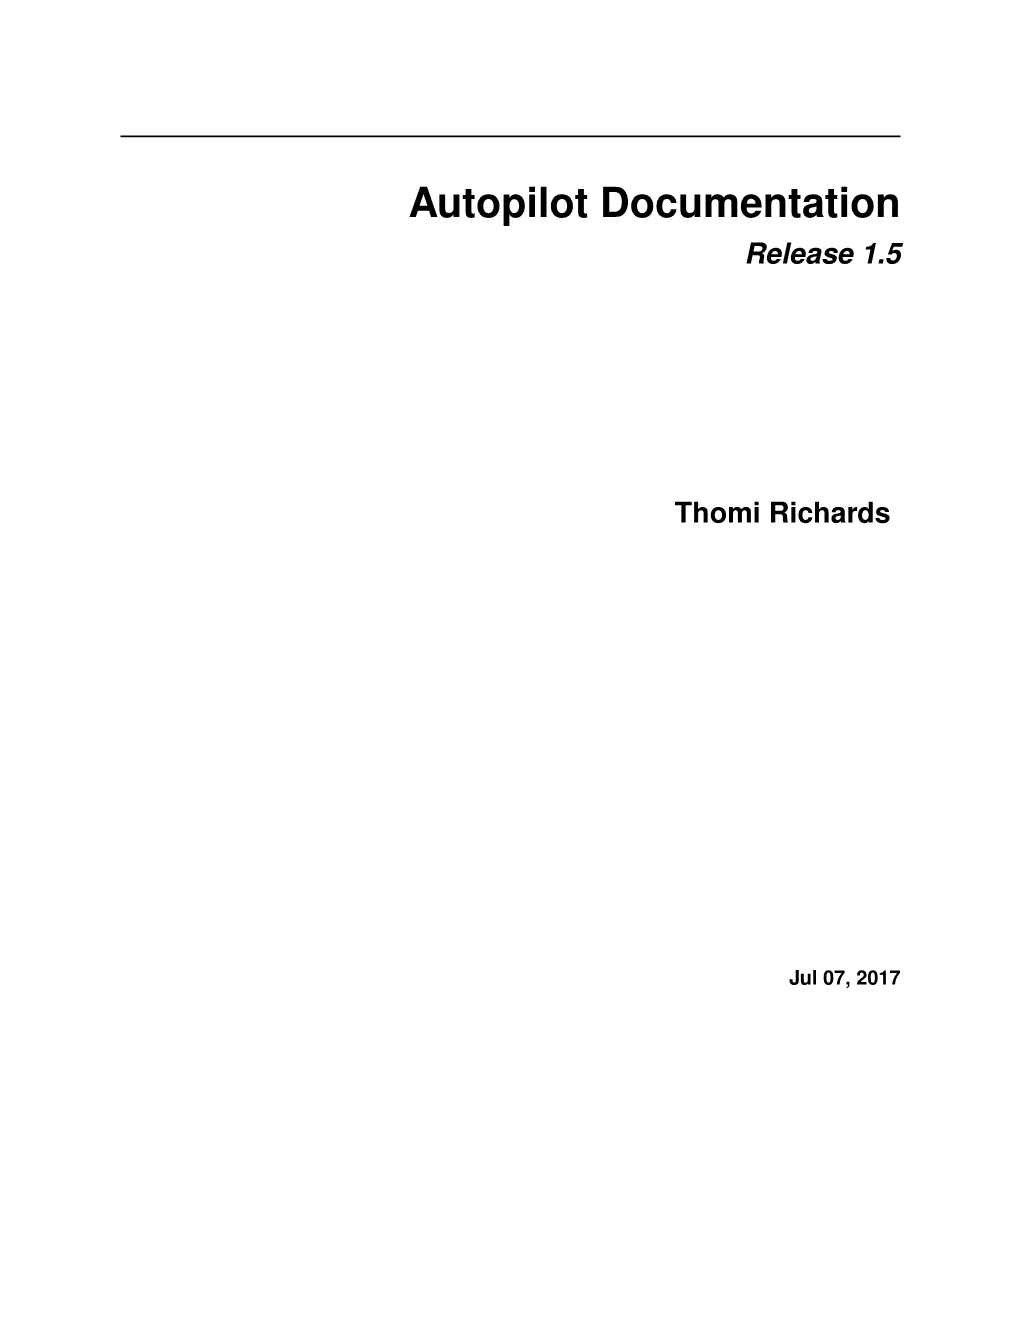 Autopilot Documentation Release 1.5